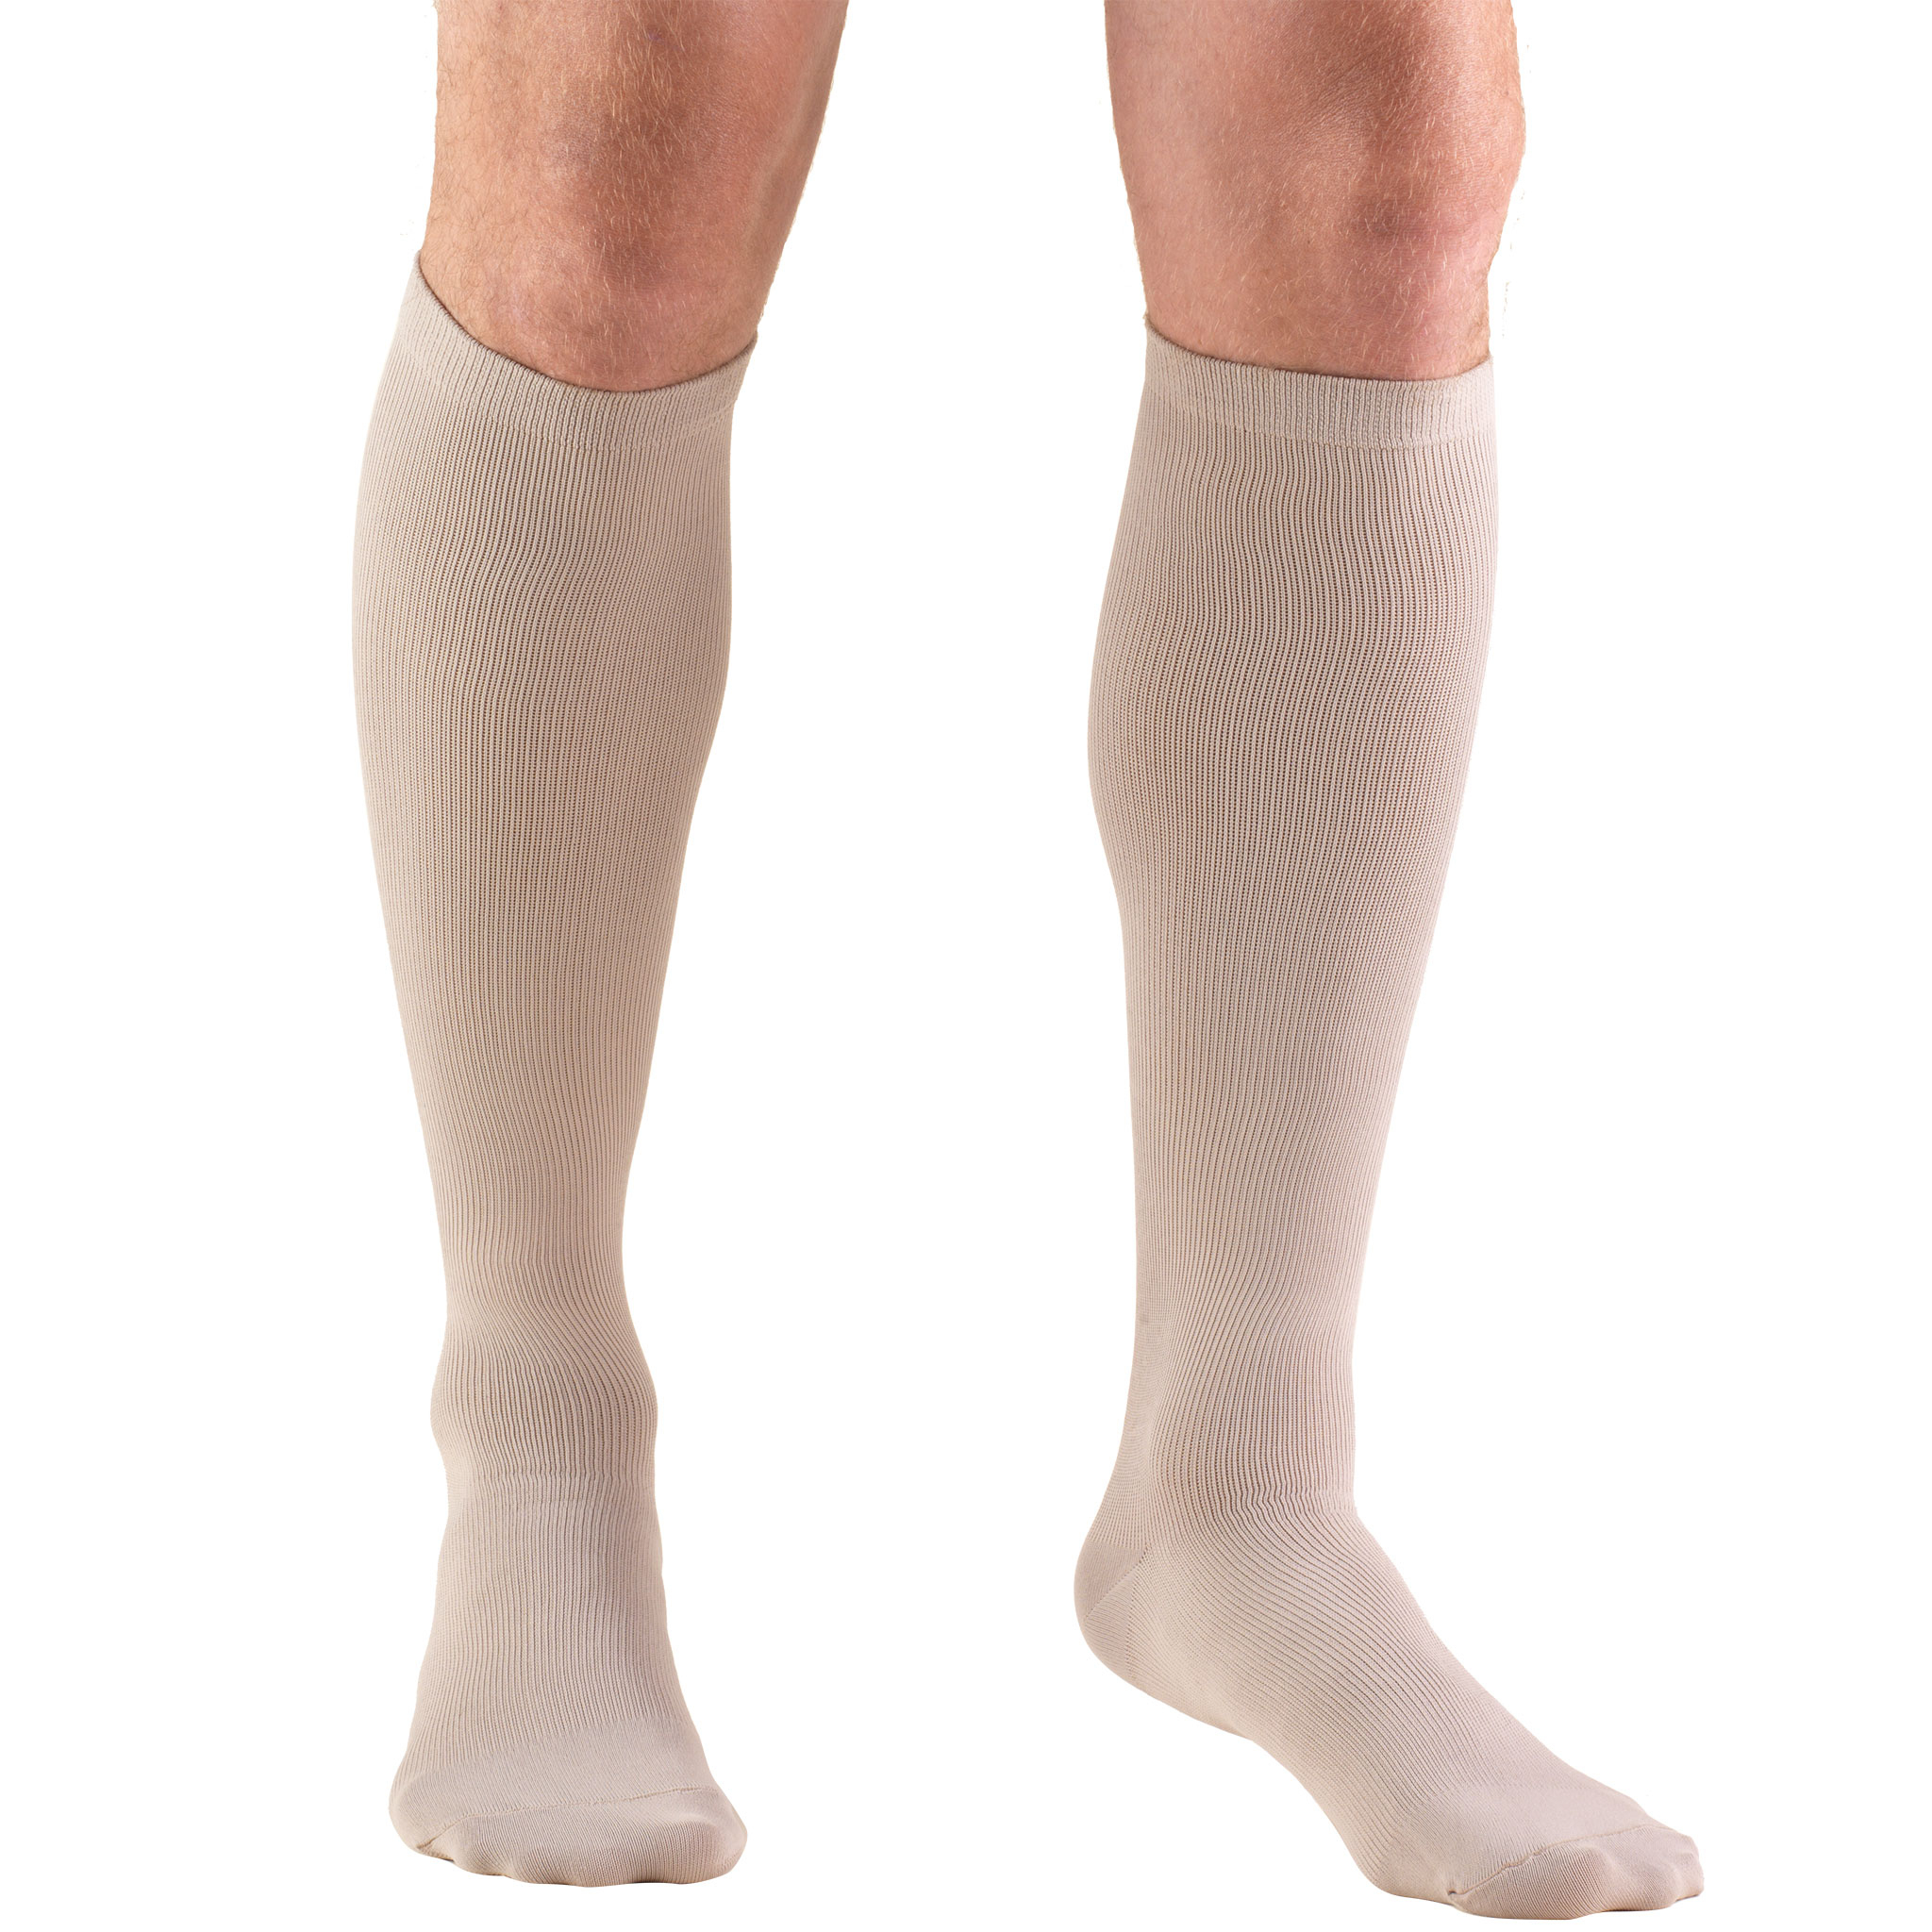 Truform Knee High Dress Socks: 15 - 20 Mmhg, Tan, X-Large pour Compression Socks Walmart 